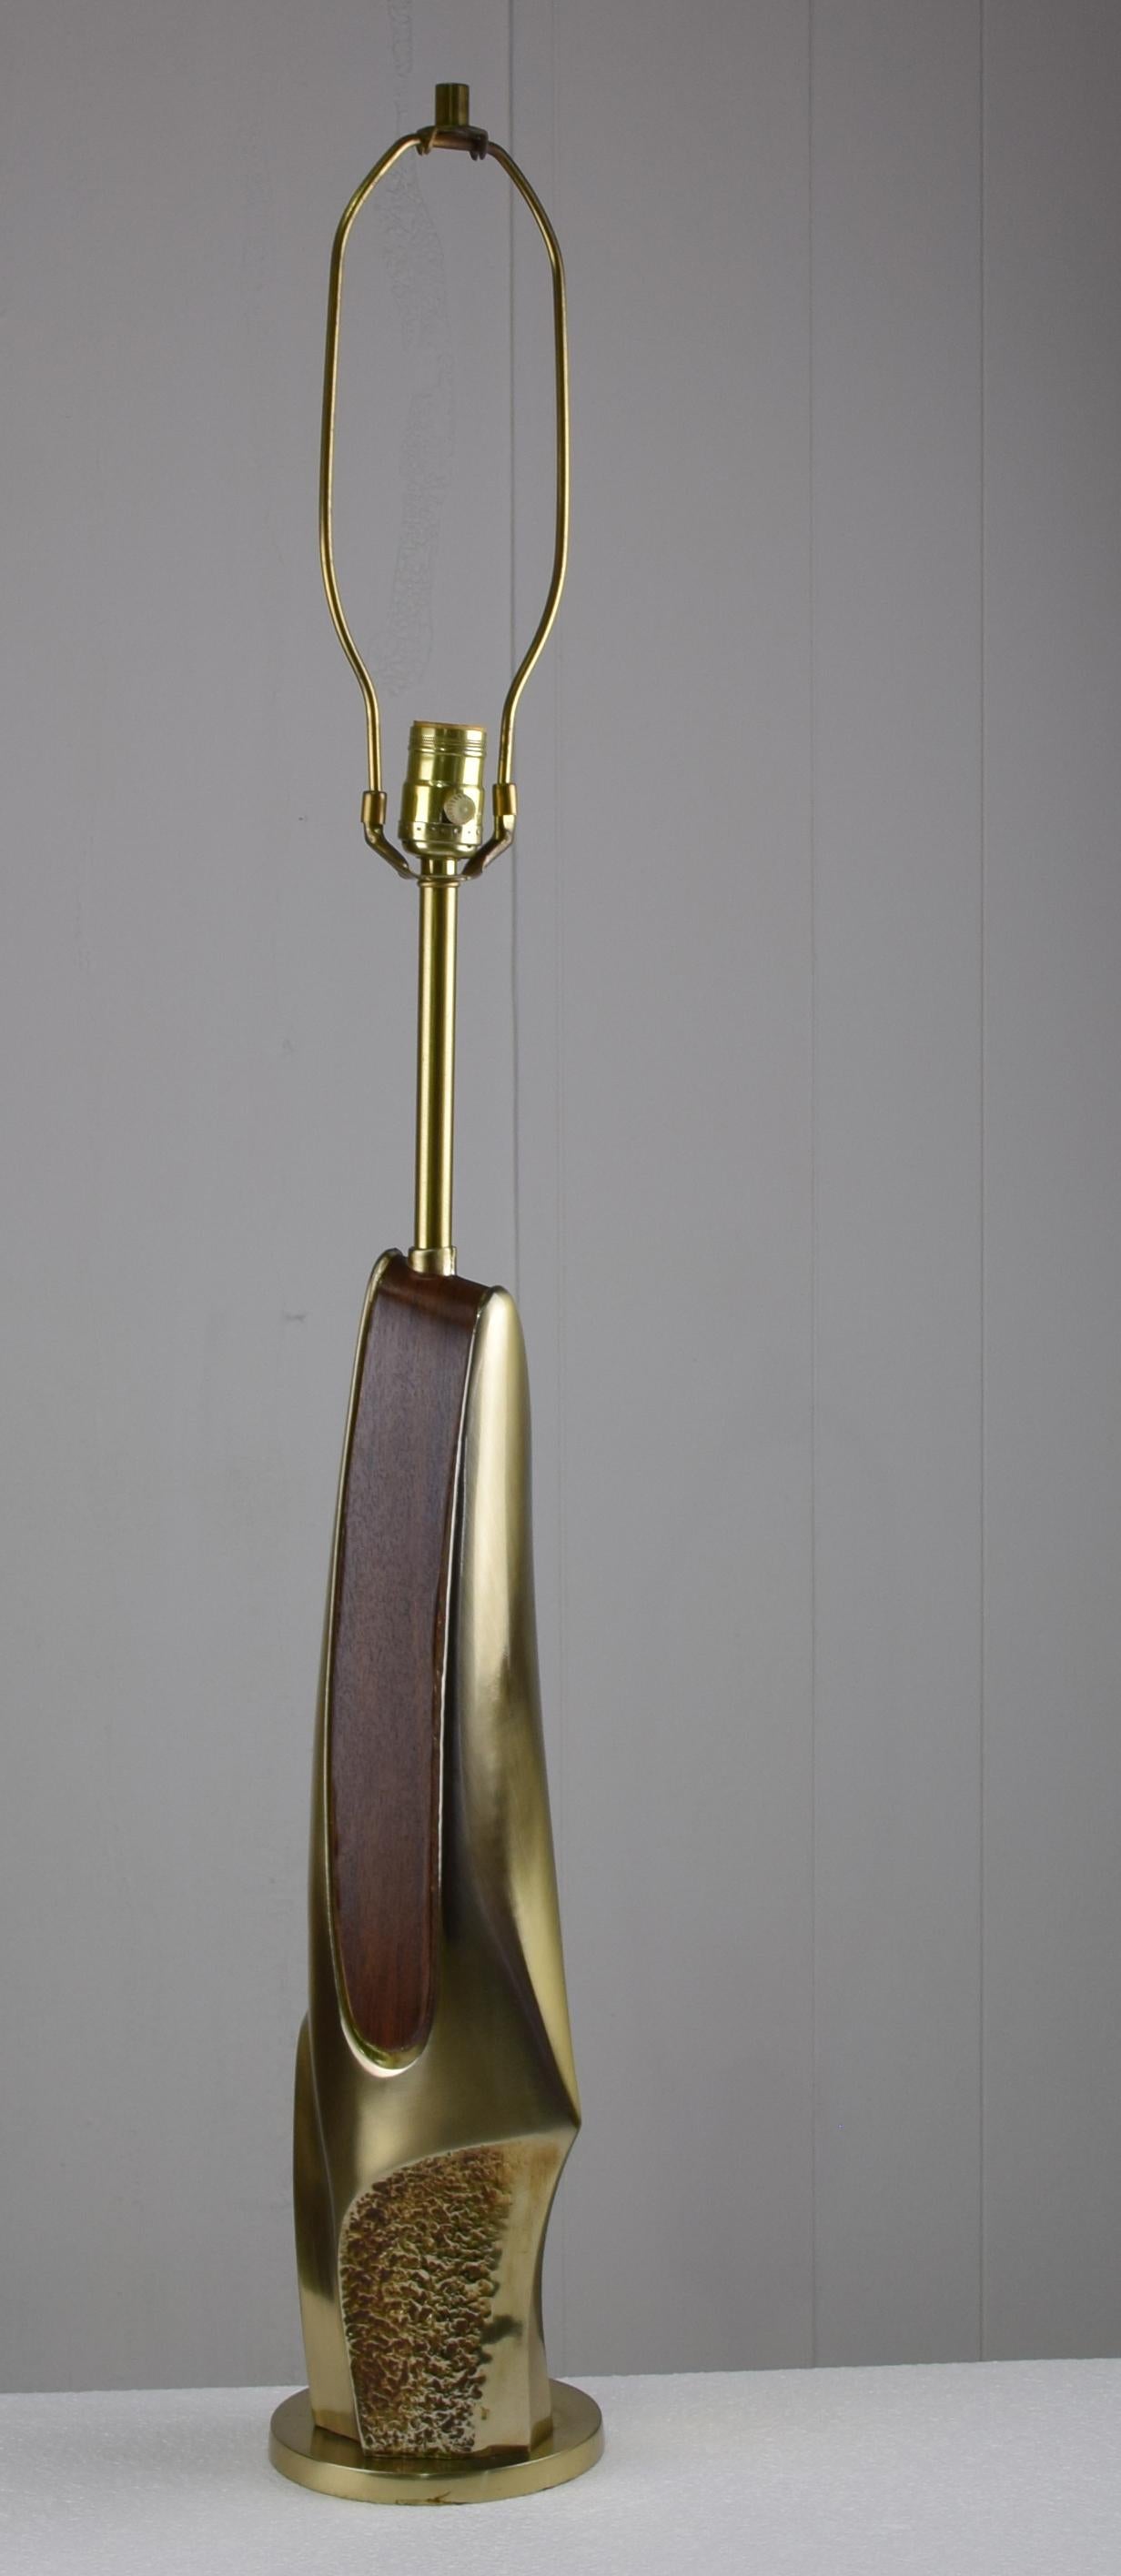 Skulpturale, abstrakte Tischlampe aus Messingguss mit originalem Lampenschirm. Maße: 39